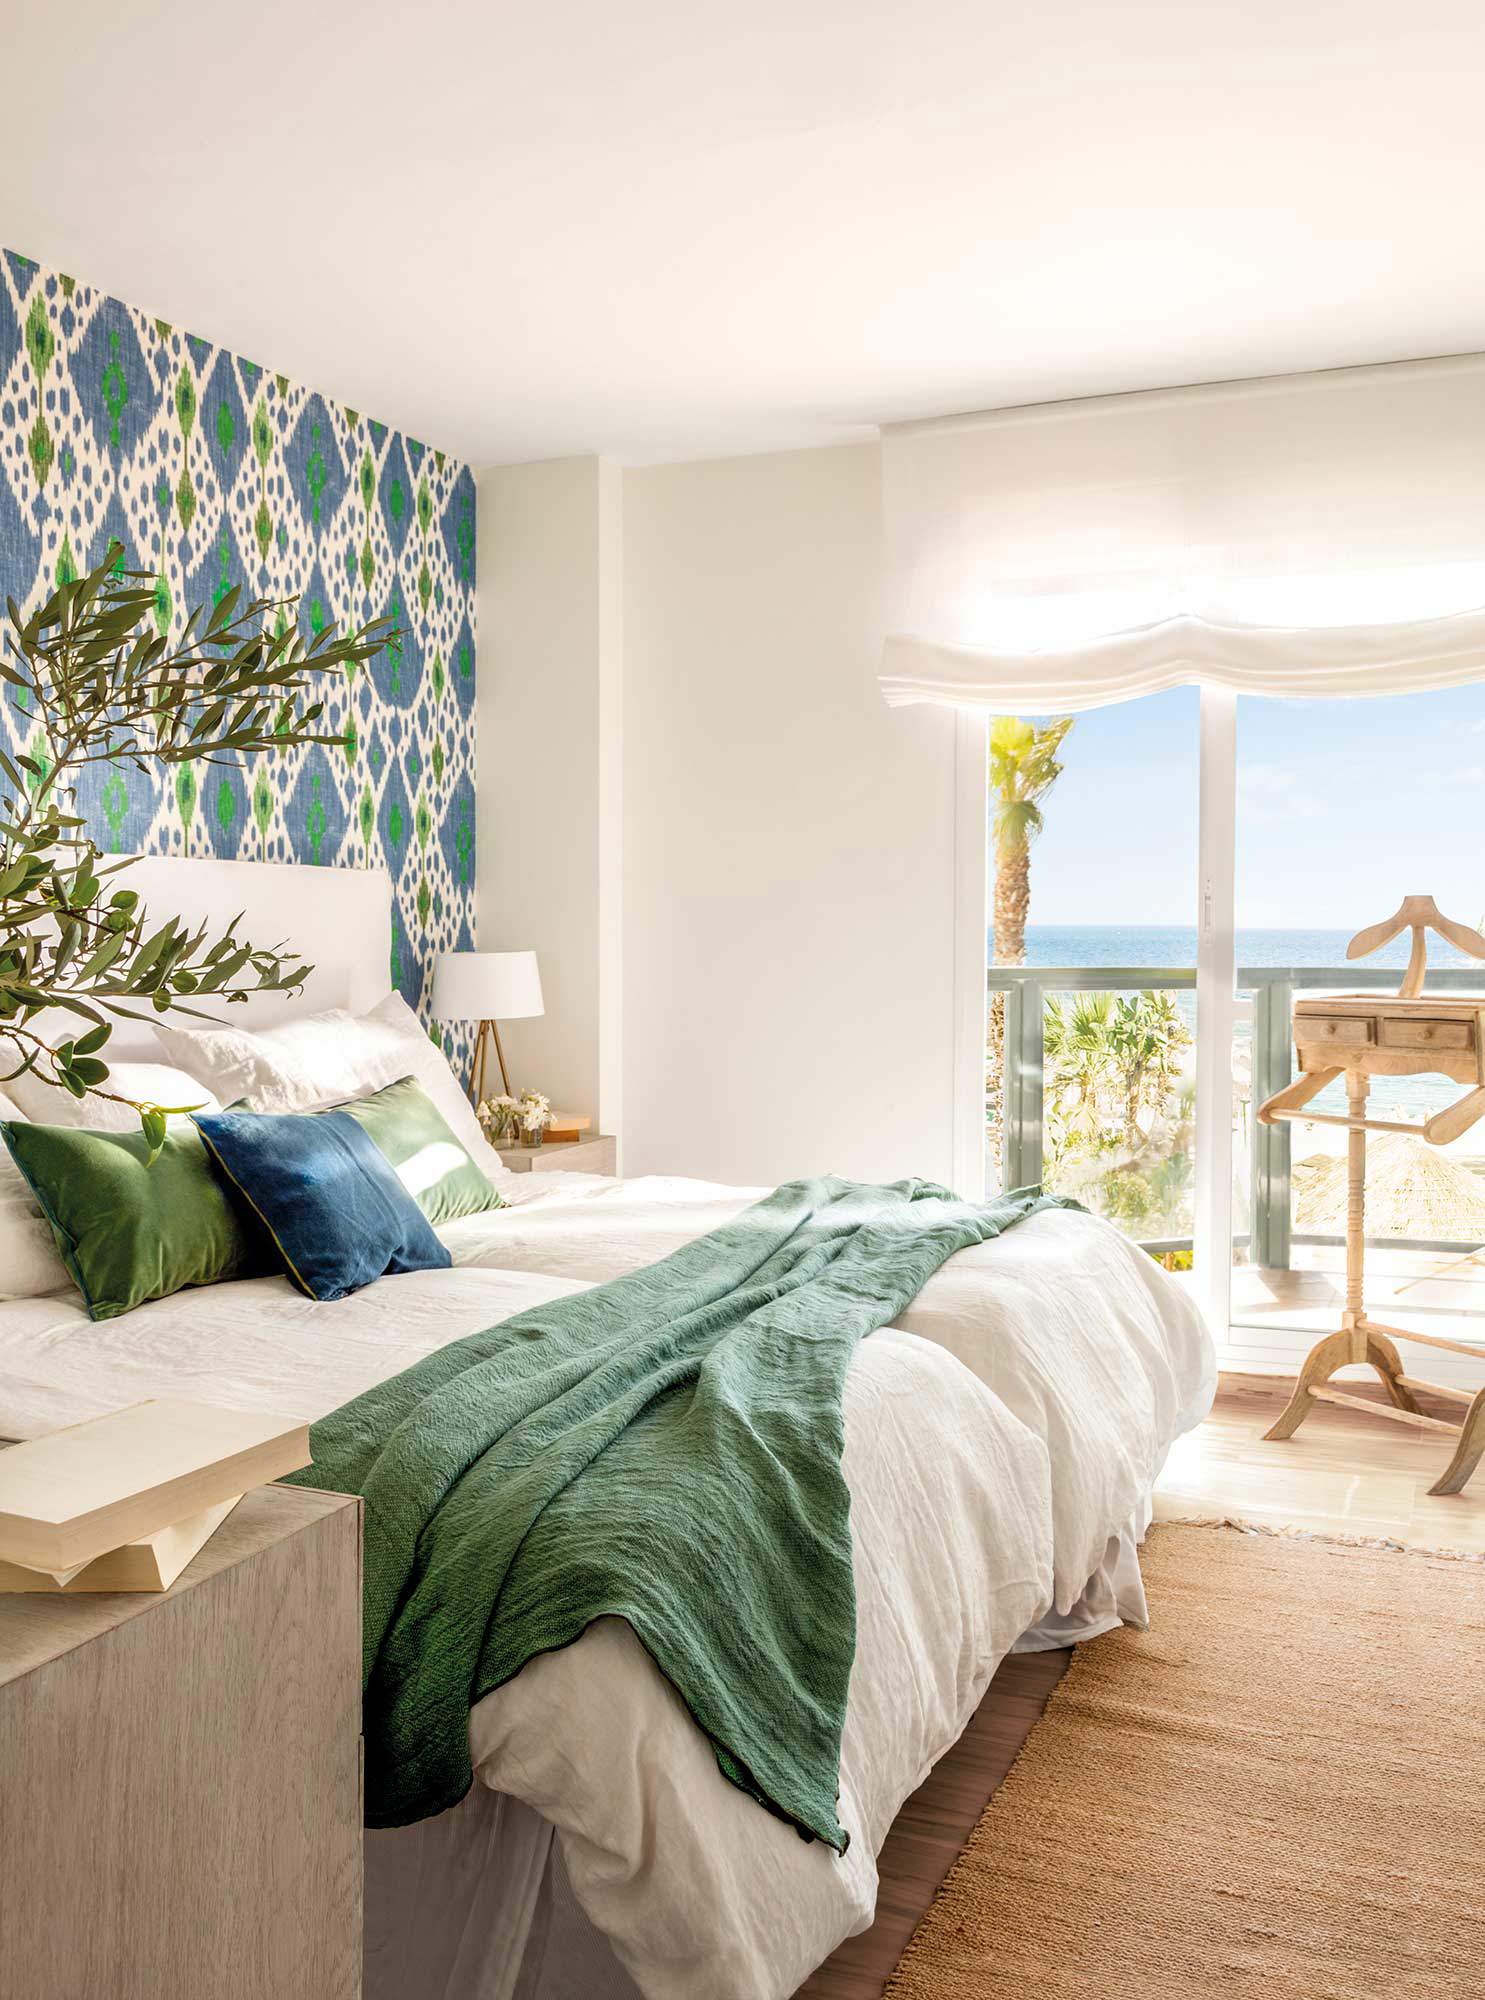 Dormitorio blanco con pared del cabecero con papel pintado de motivos geométricos en verde y azul.